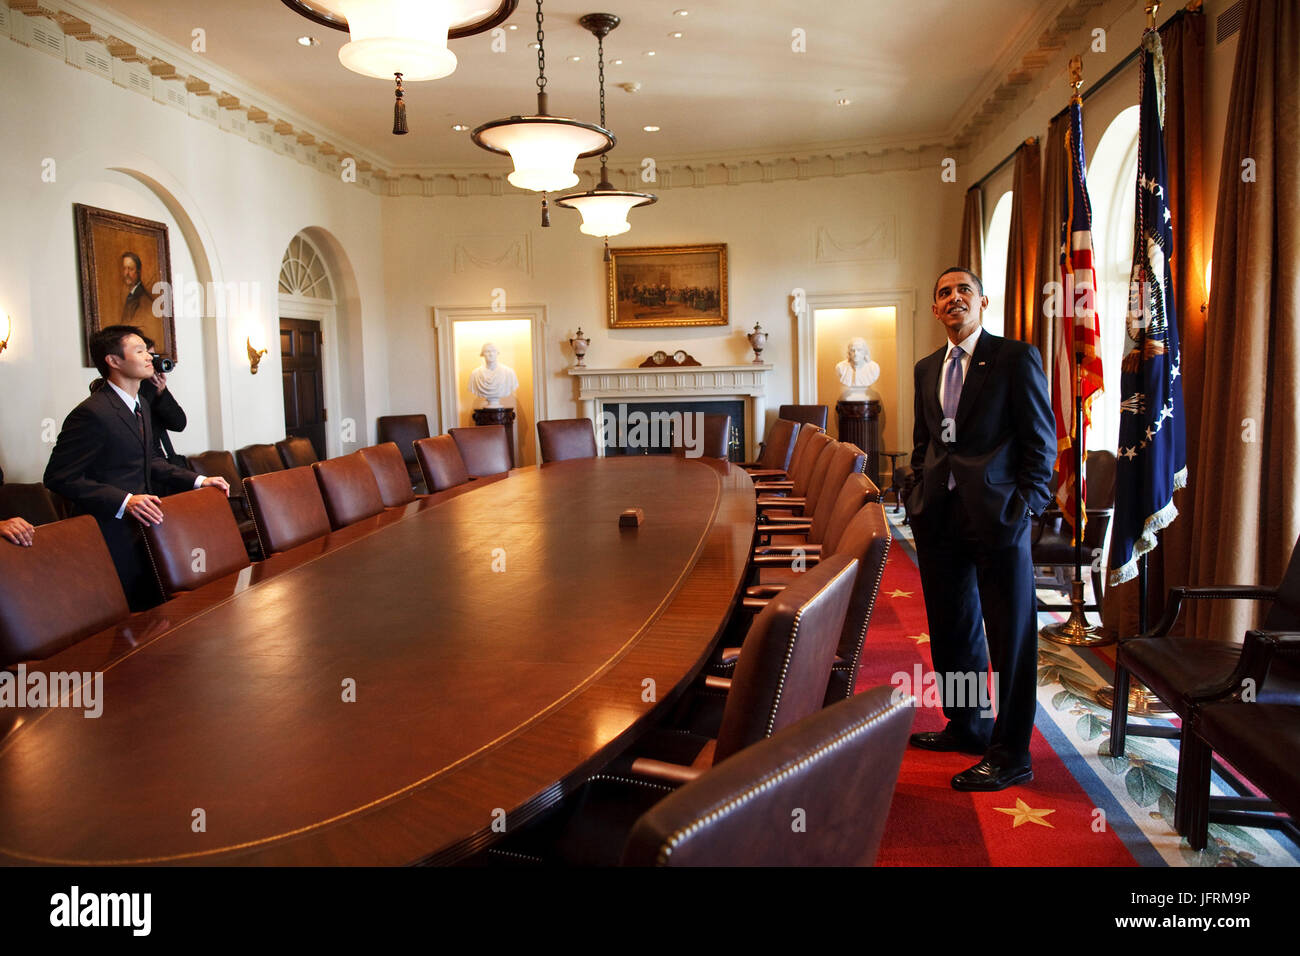 Le président Barack Obama sondages la salle du Cabinet avec les membres de la famille tout en visitant la Maison Blanche sur son premier jour dans le bureau. 1/21/09 Photo Officiel de la Maison Blanche par Pete Souza Banque D'Images